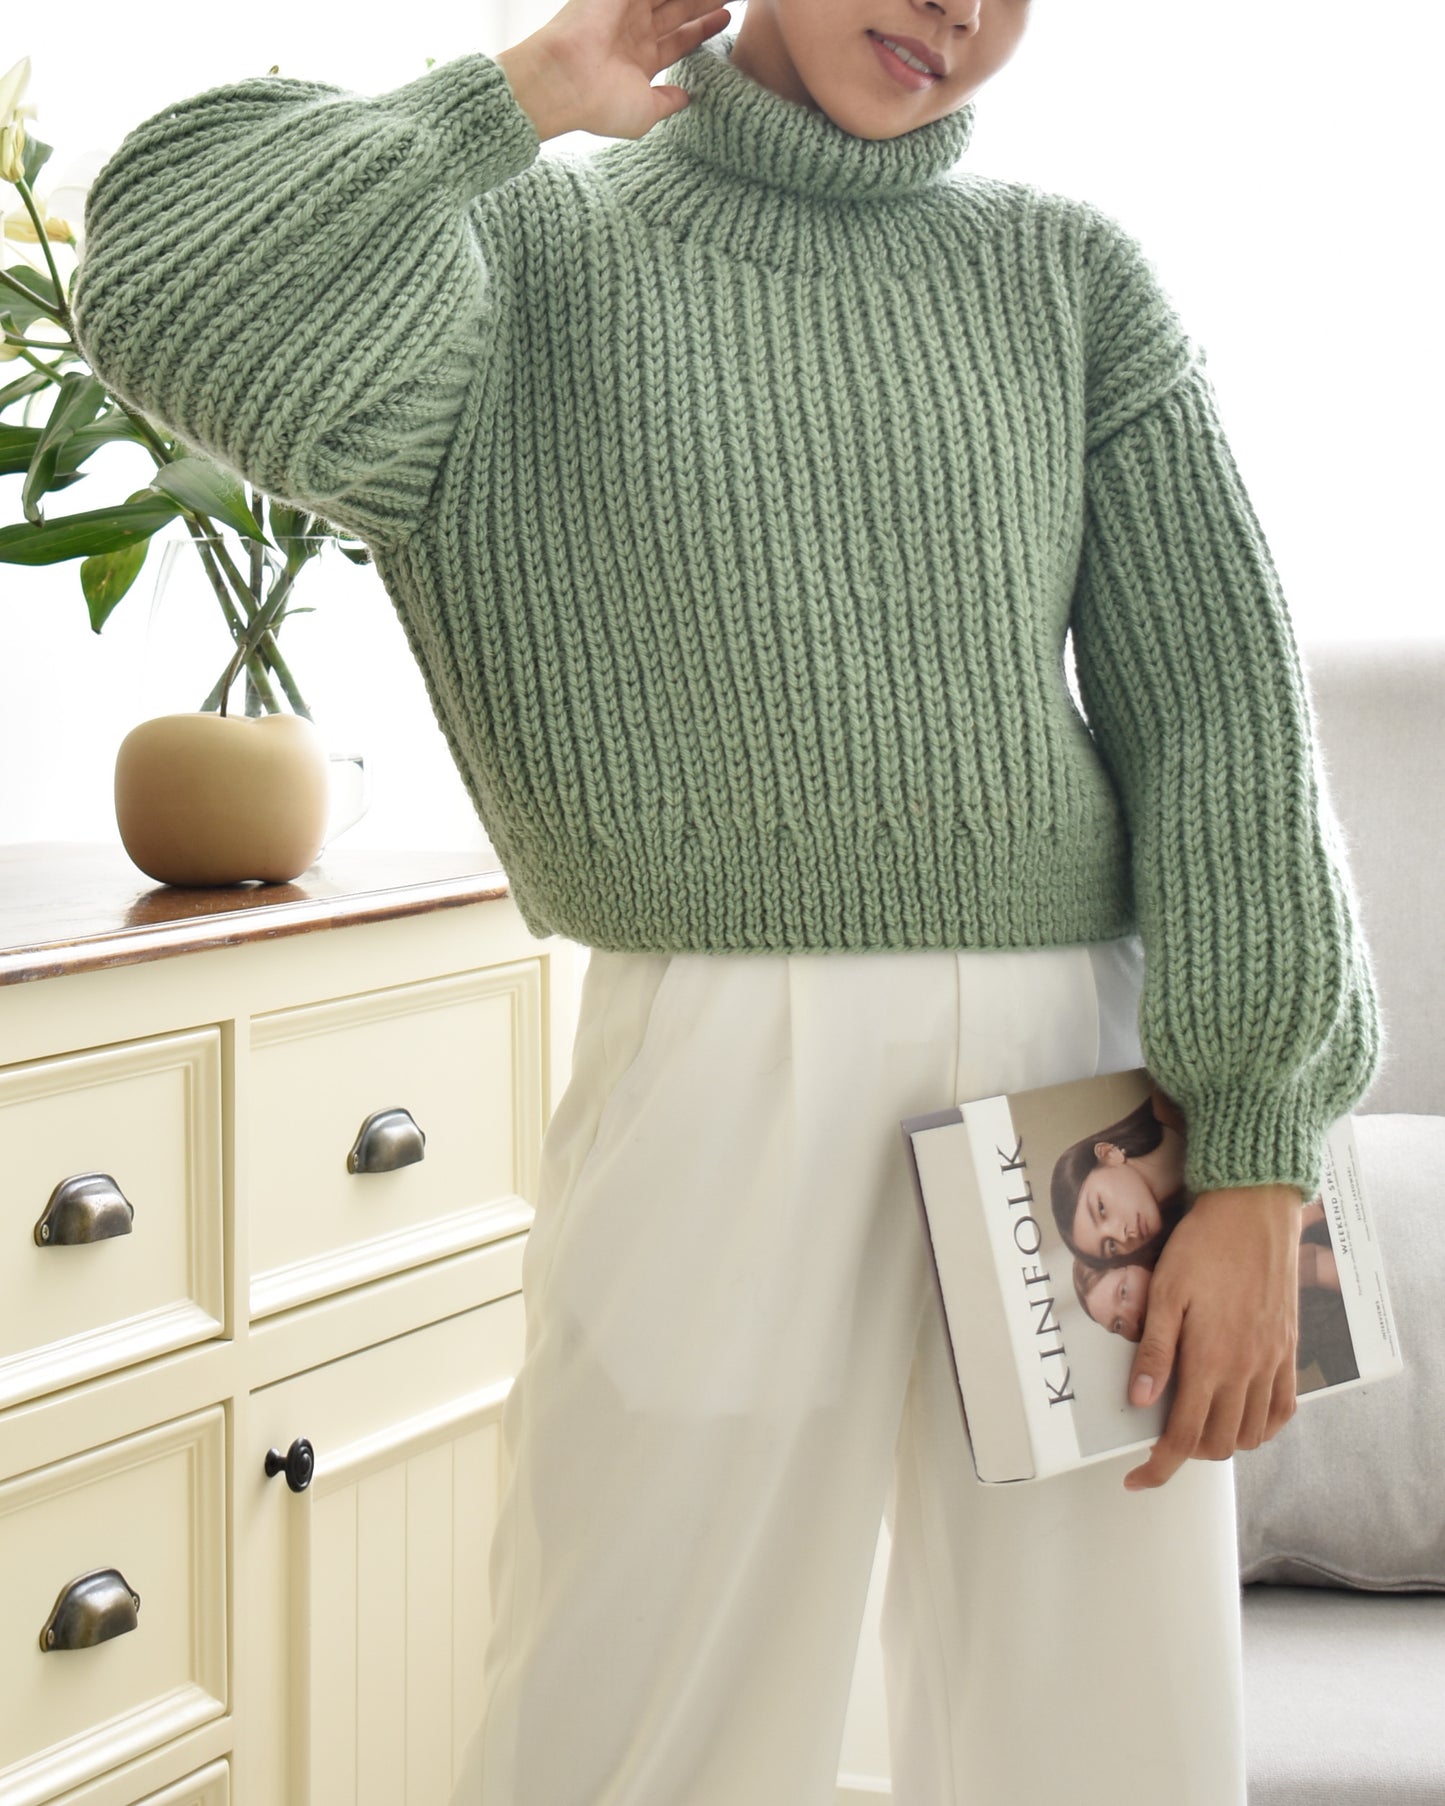 Sweater No.20 | Chunky knitting sweater pattern